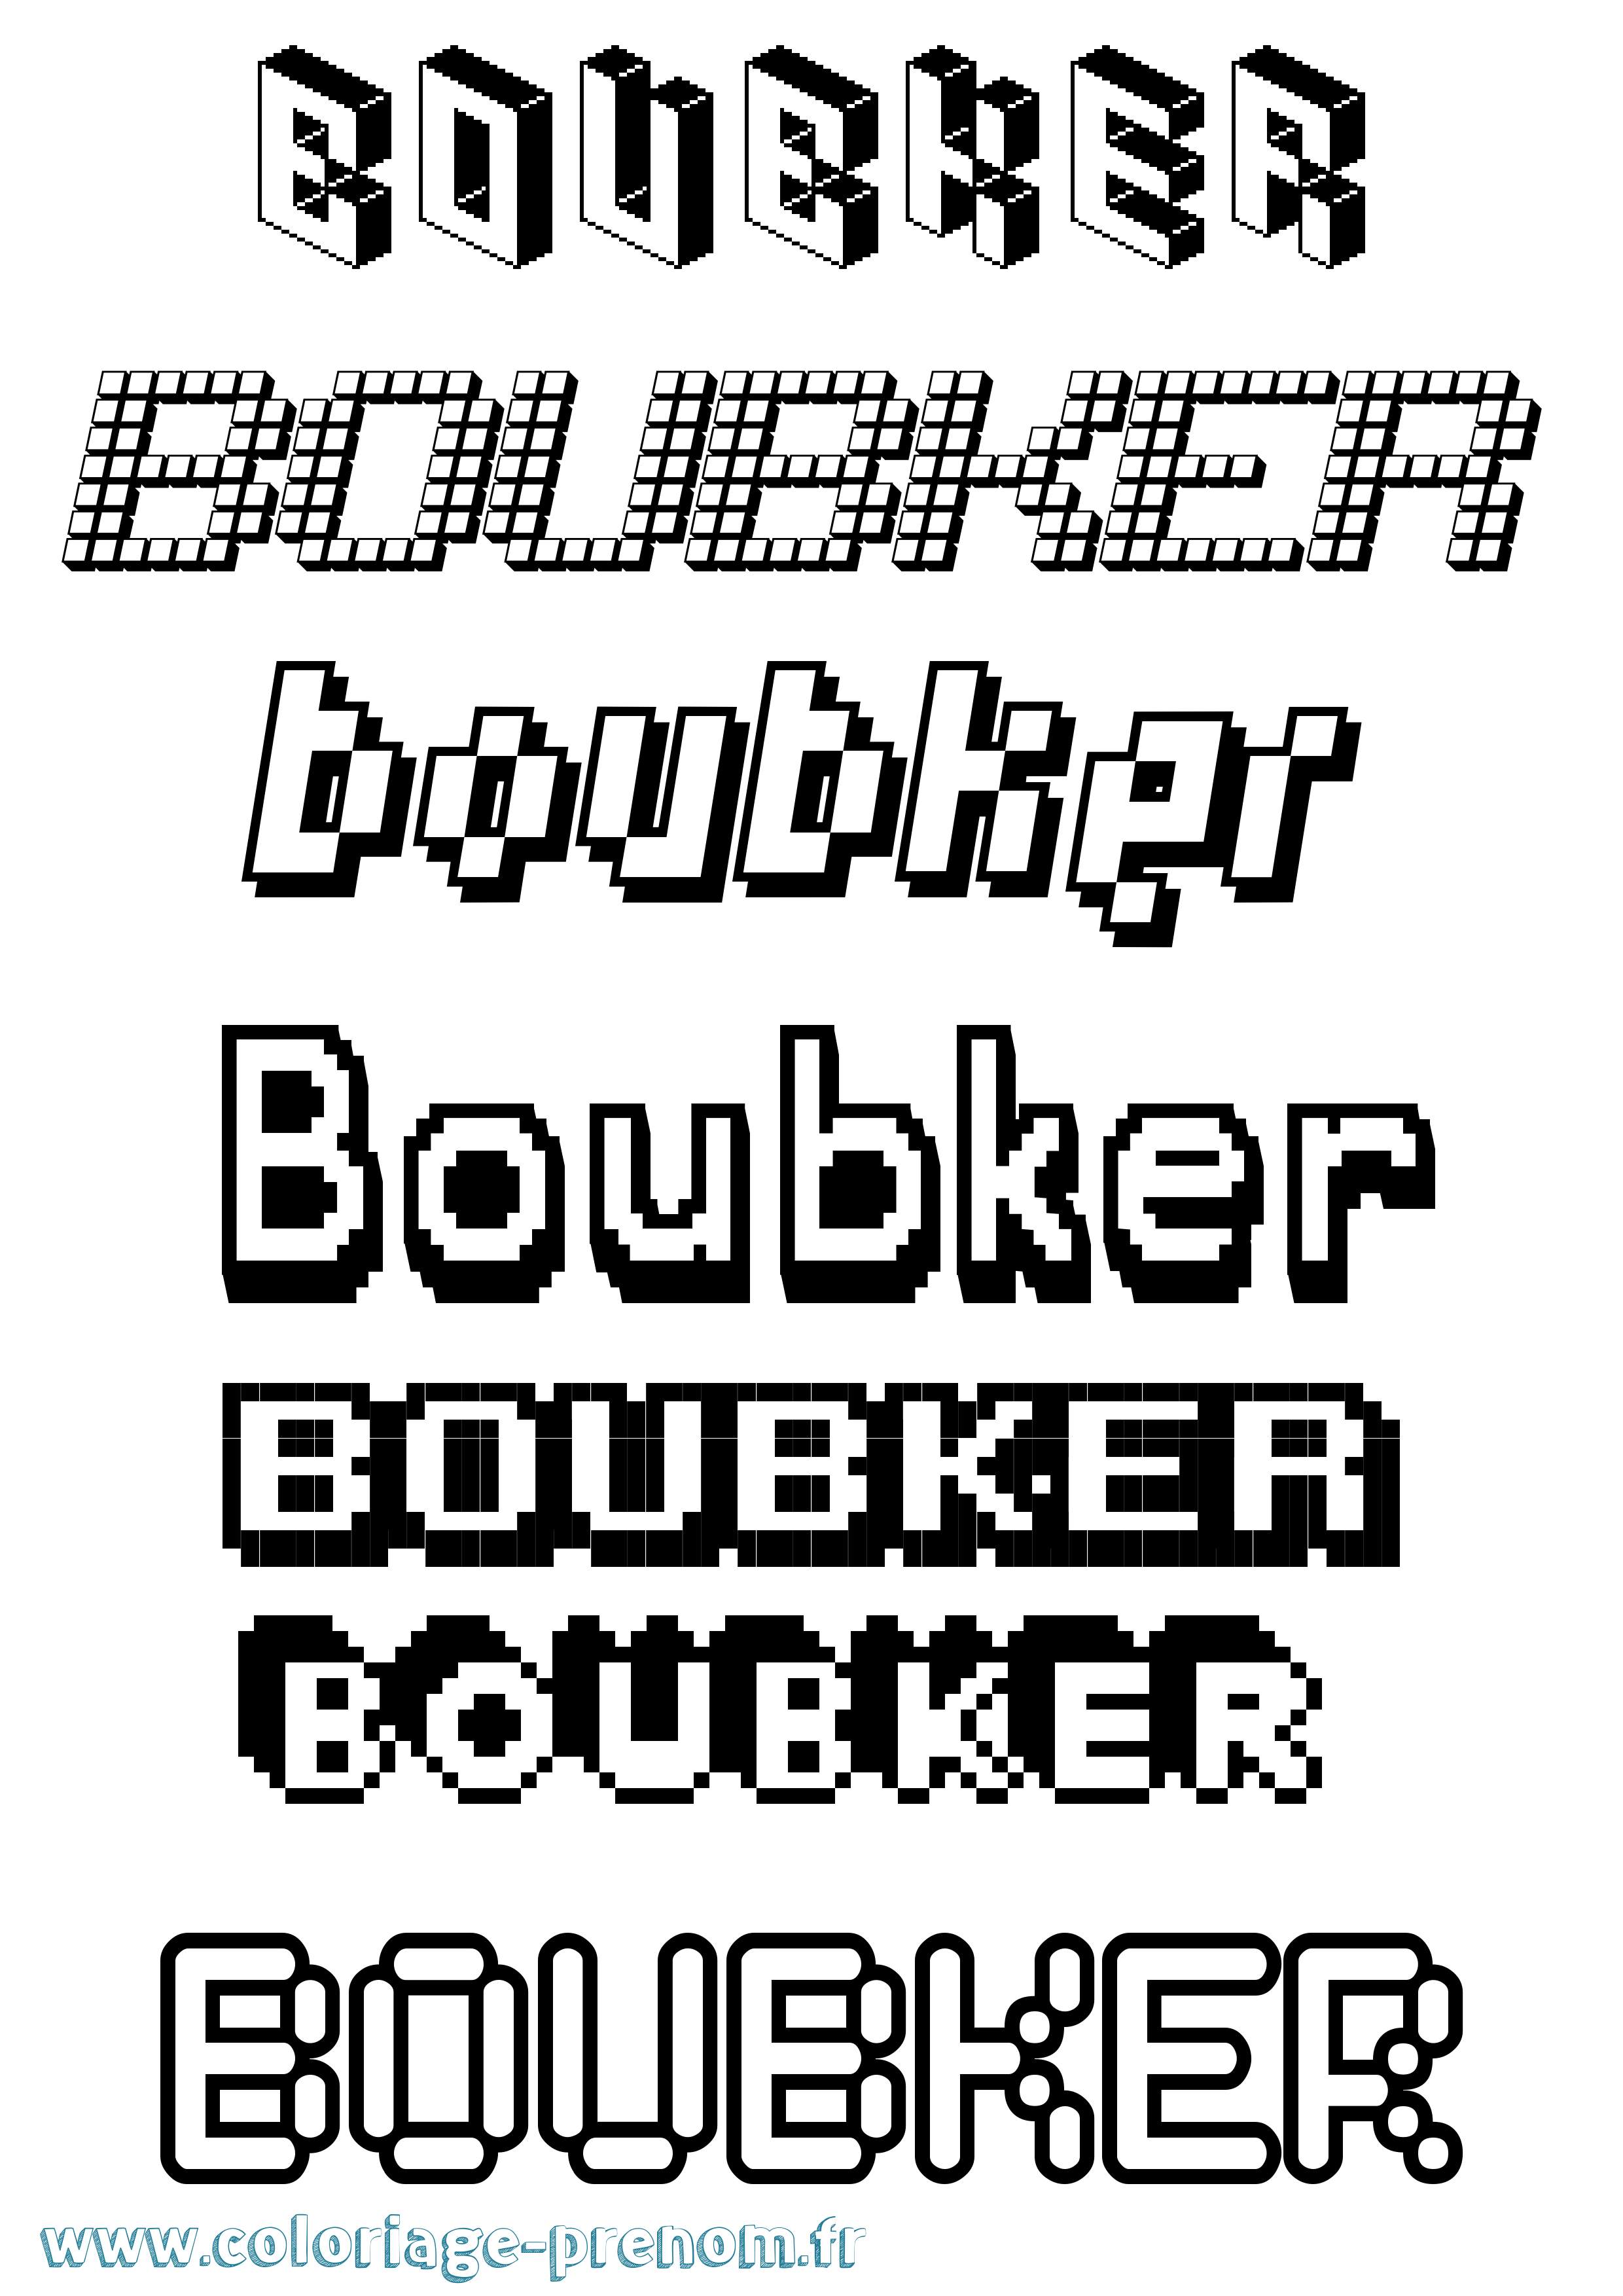 Coloriage prénom Boubker Pixel